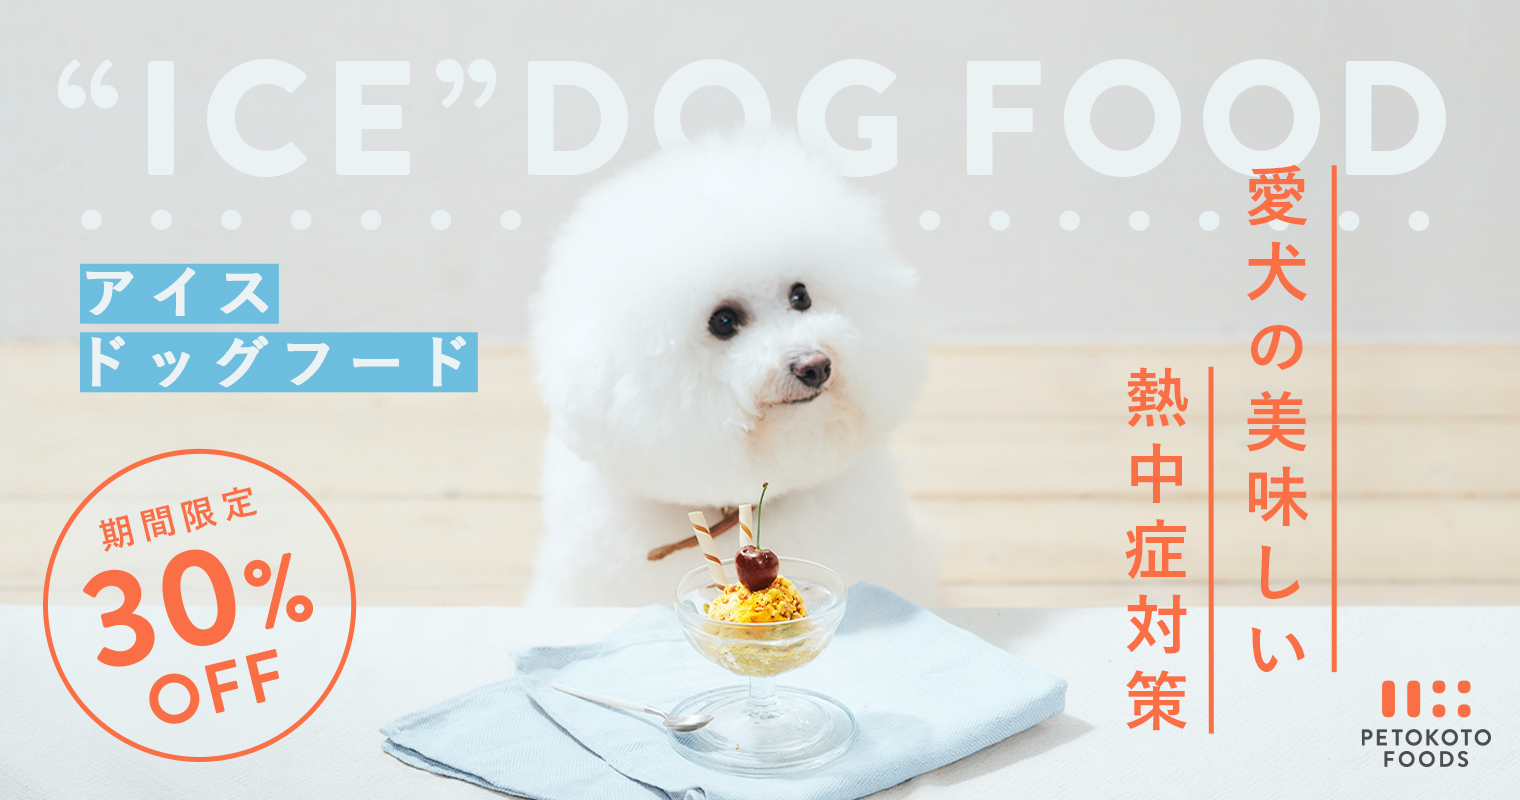 犬の熱中症対策に アイスドッグフード はいかが 水分たっぷり Petokoto Foods 初回30 Offキャンペーン開催 Petokoto ペトコト のプレスリリース